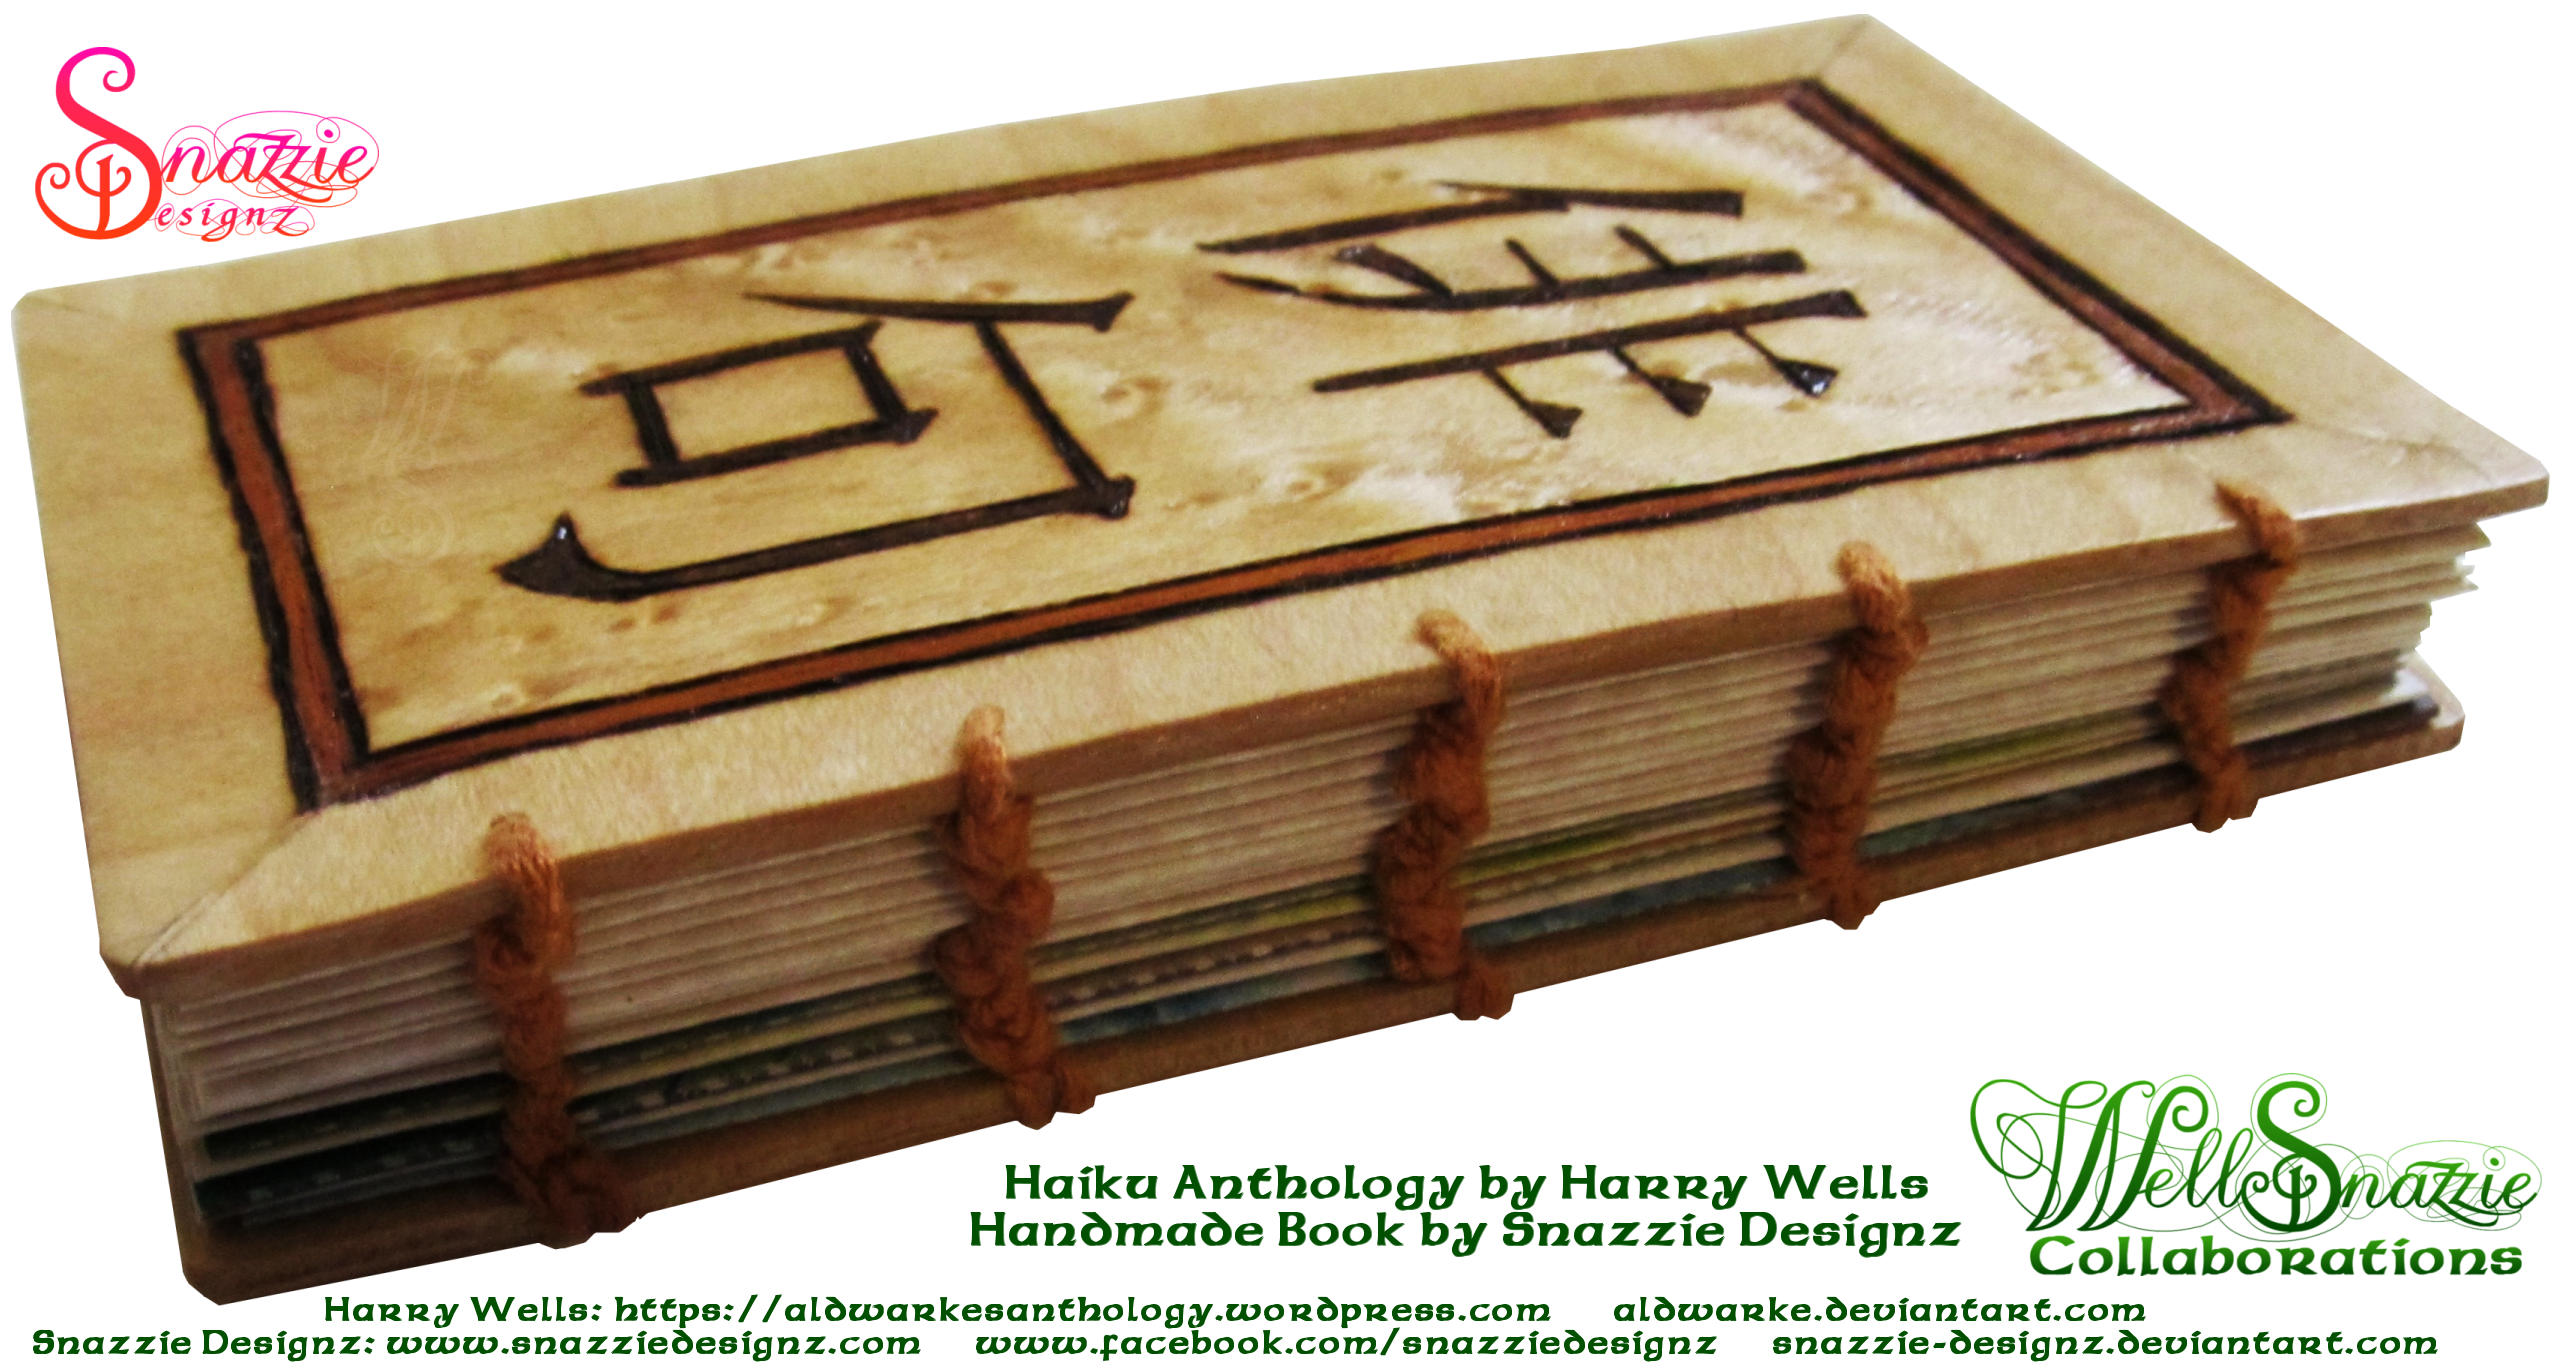 Handmade Coptic Bound Haiku Book by Snazzie Designz